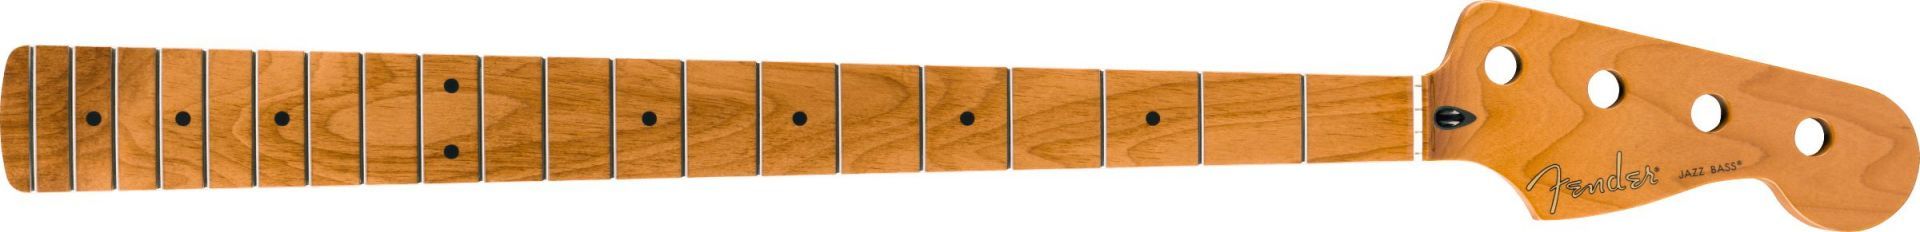 Fender Roasted Maple Jazz Bass Neck 20 Medium Jumbo Frets 9.5